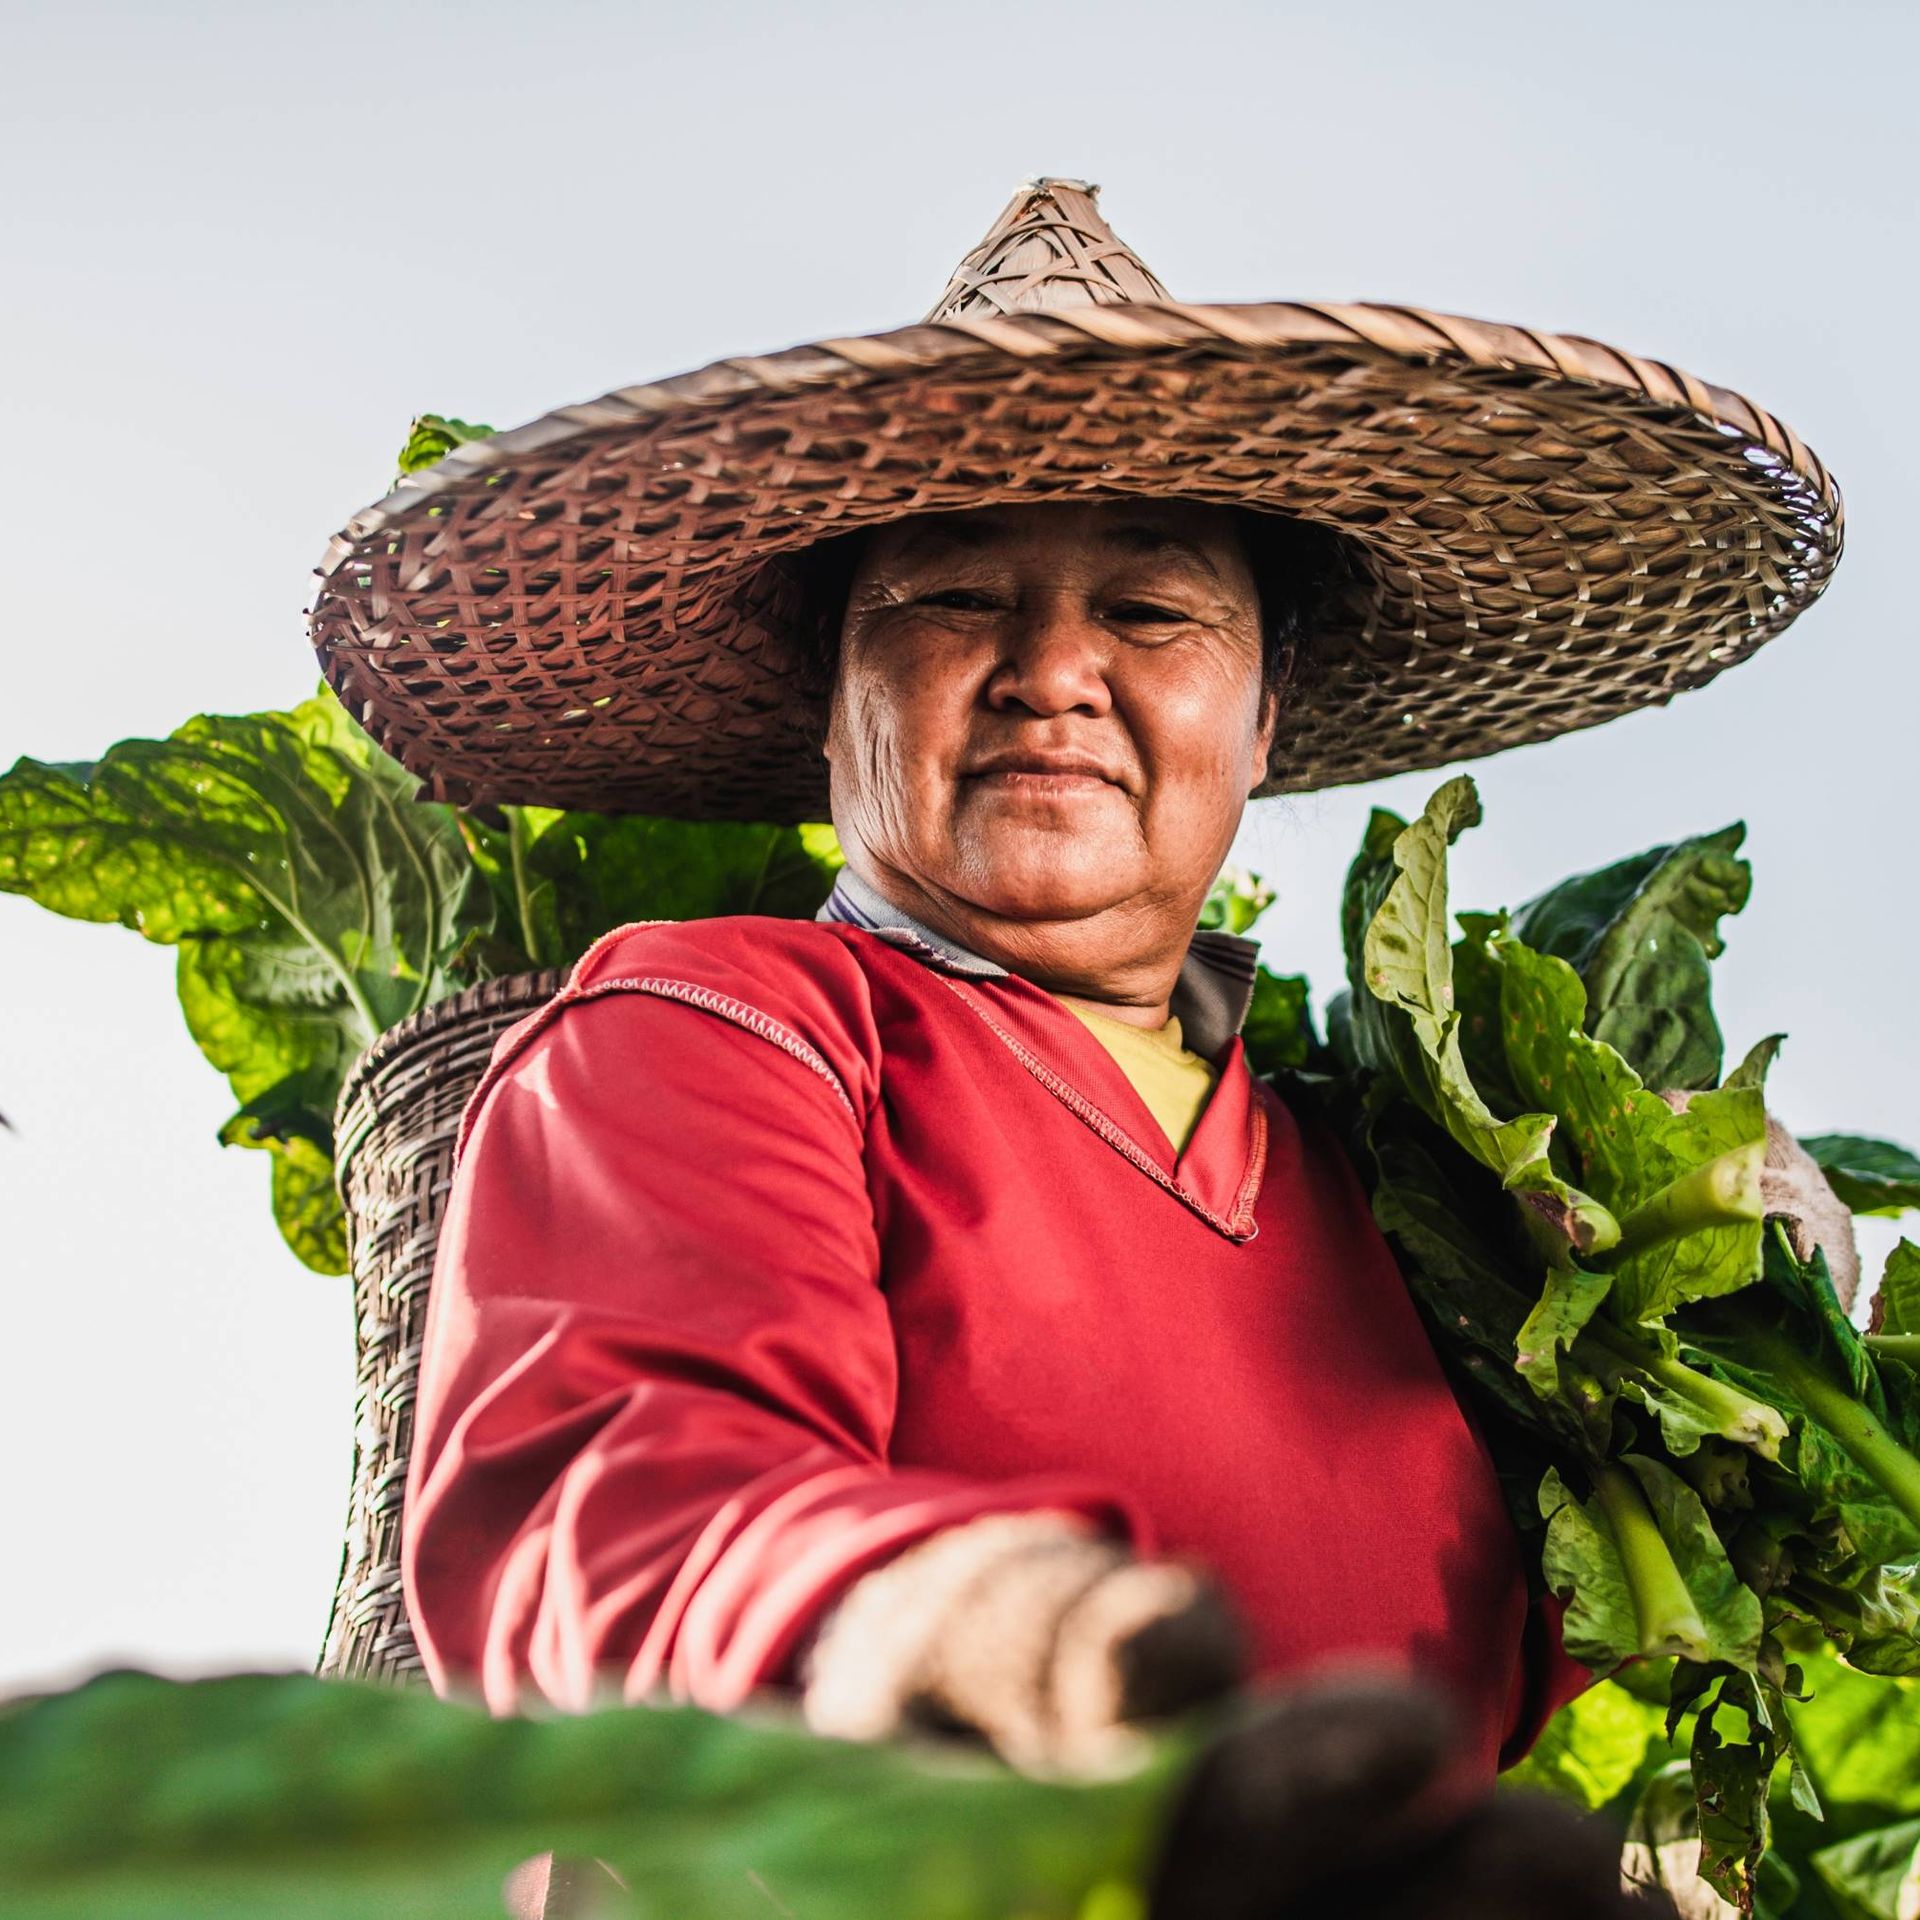 Image of a smallholder producer harvesting vegetables